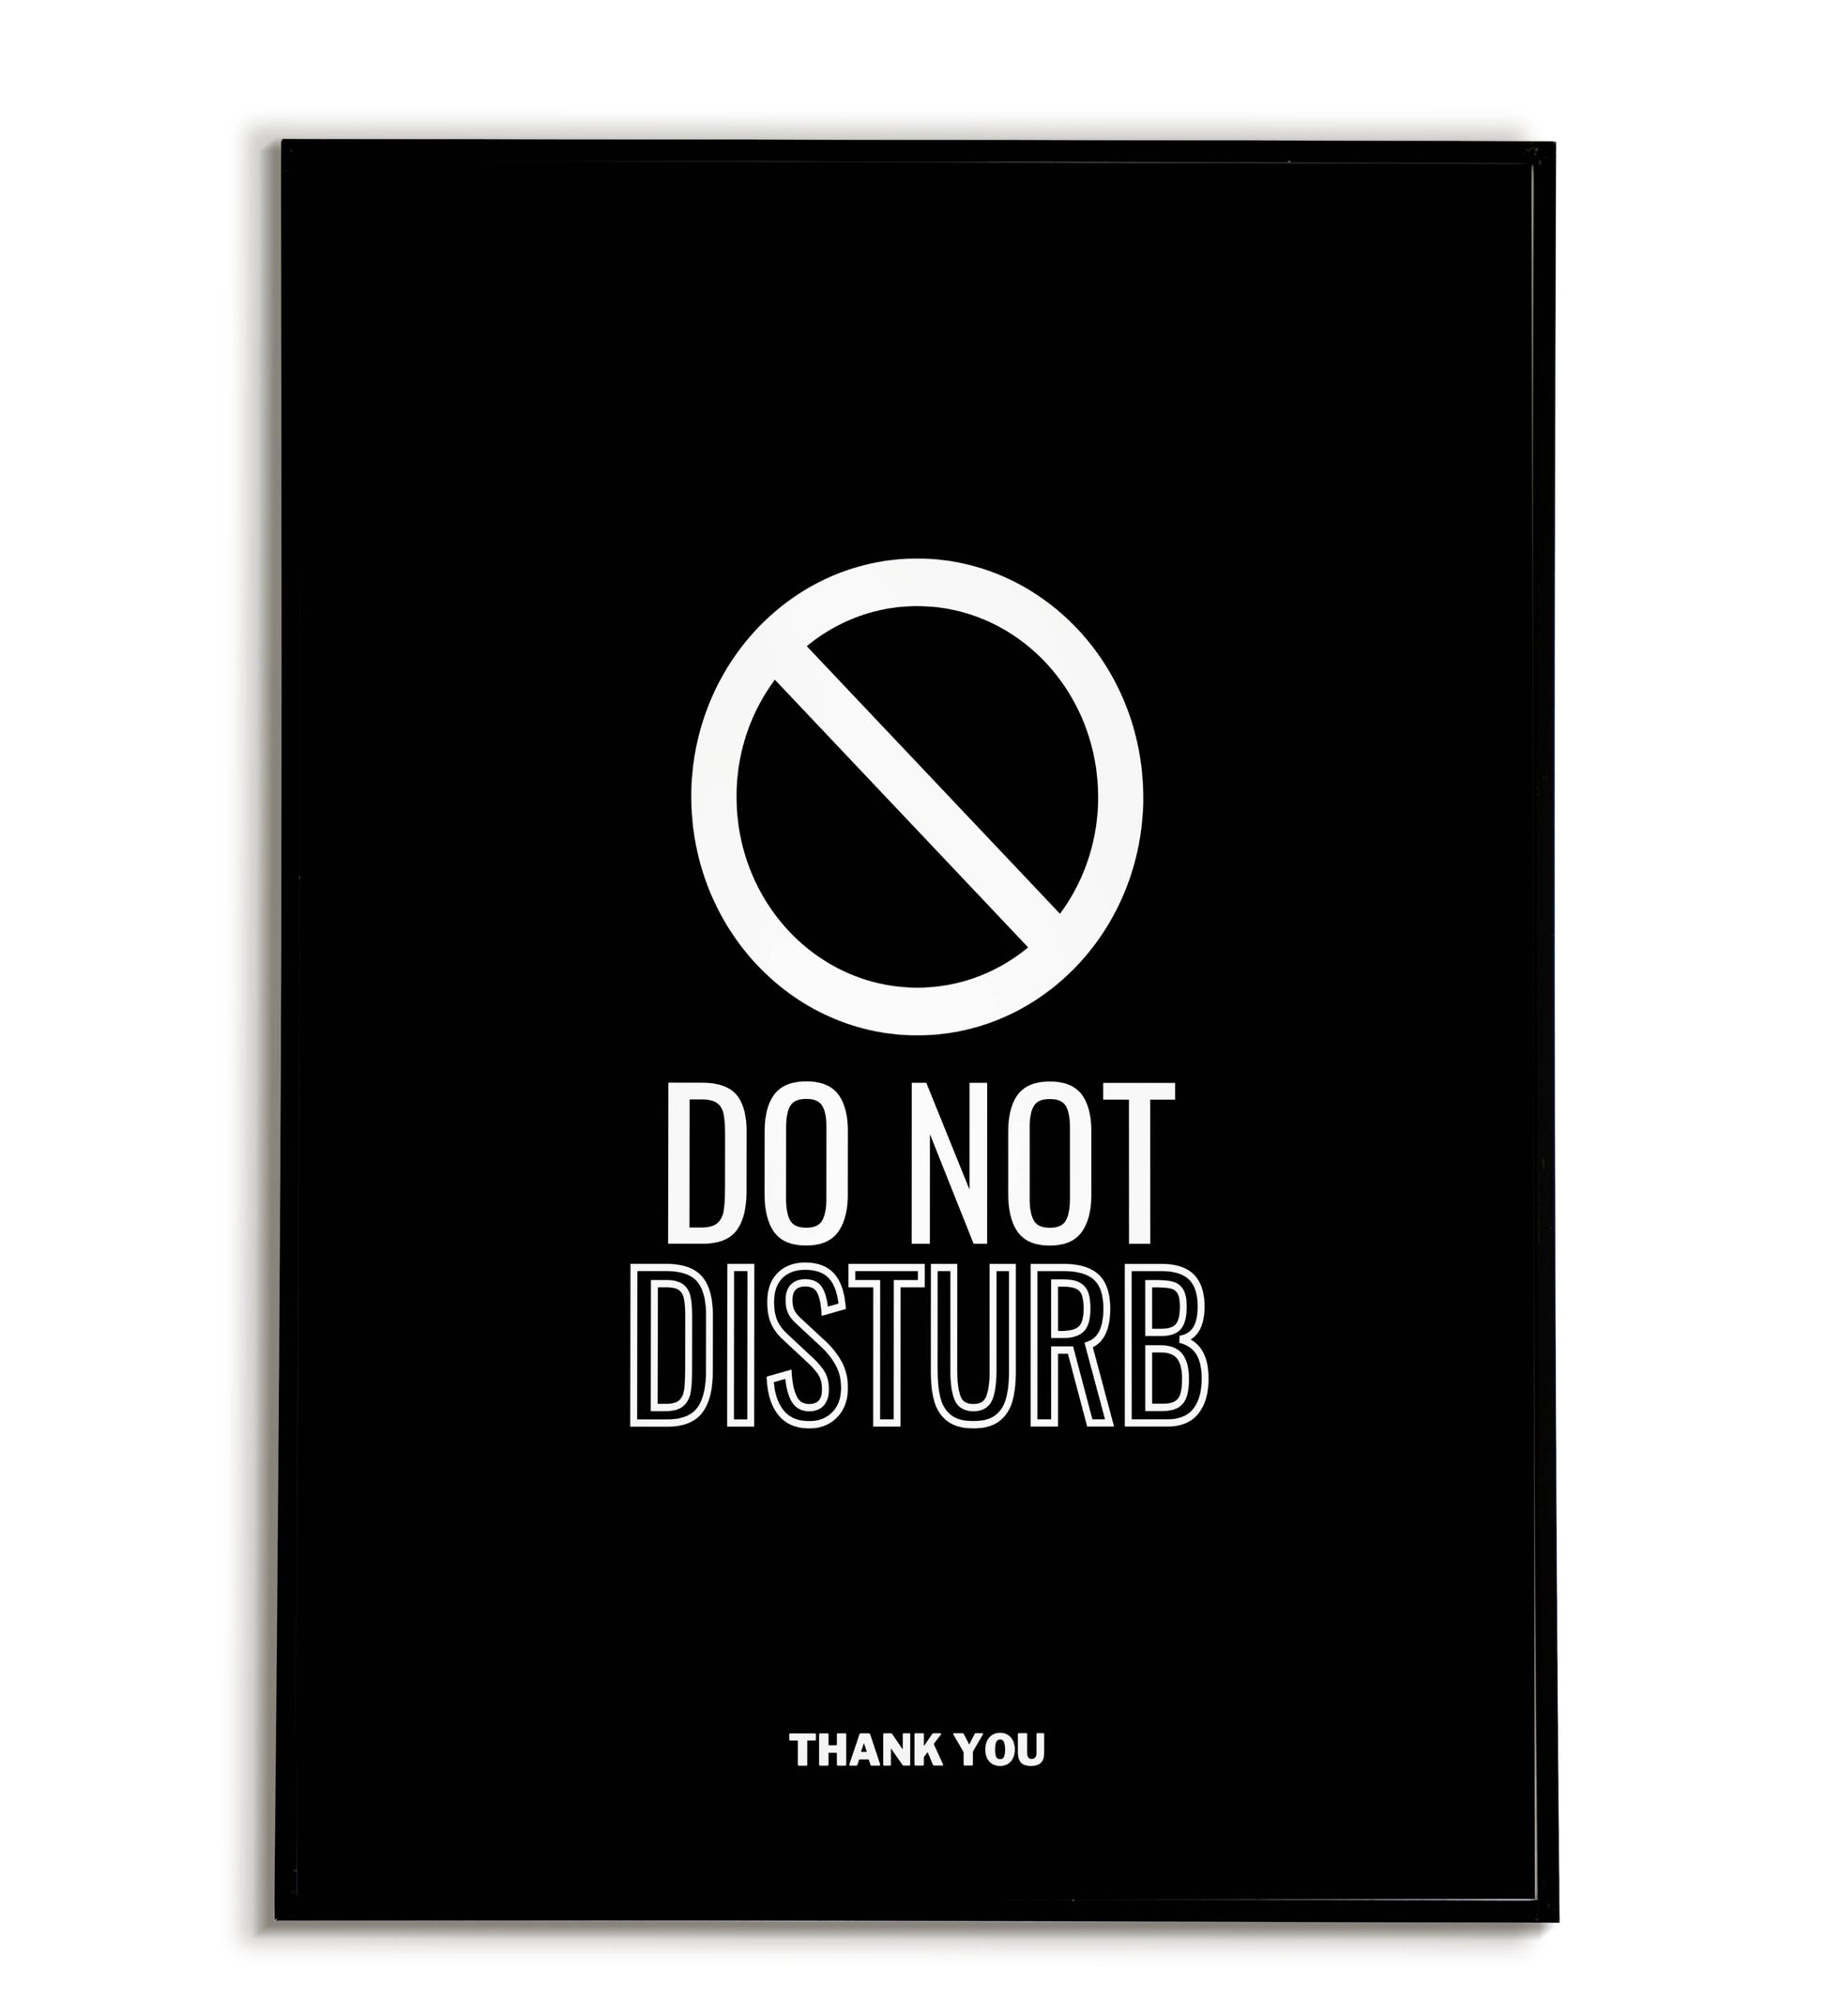 "Do not disturb" printable door sign poster.